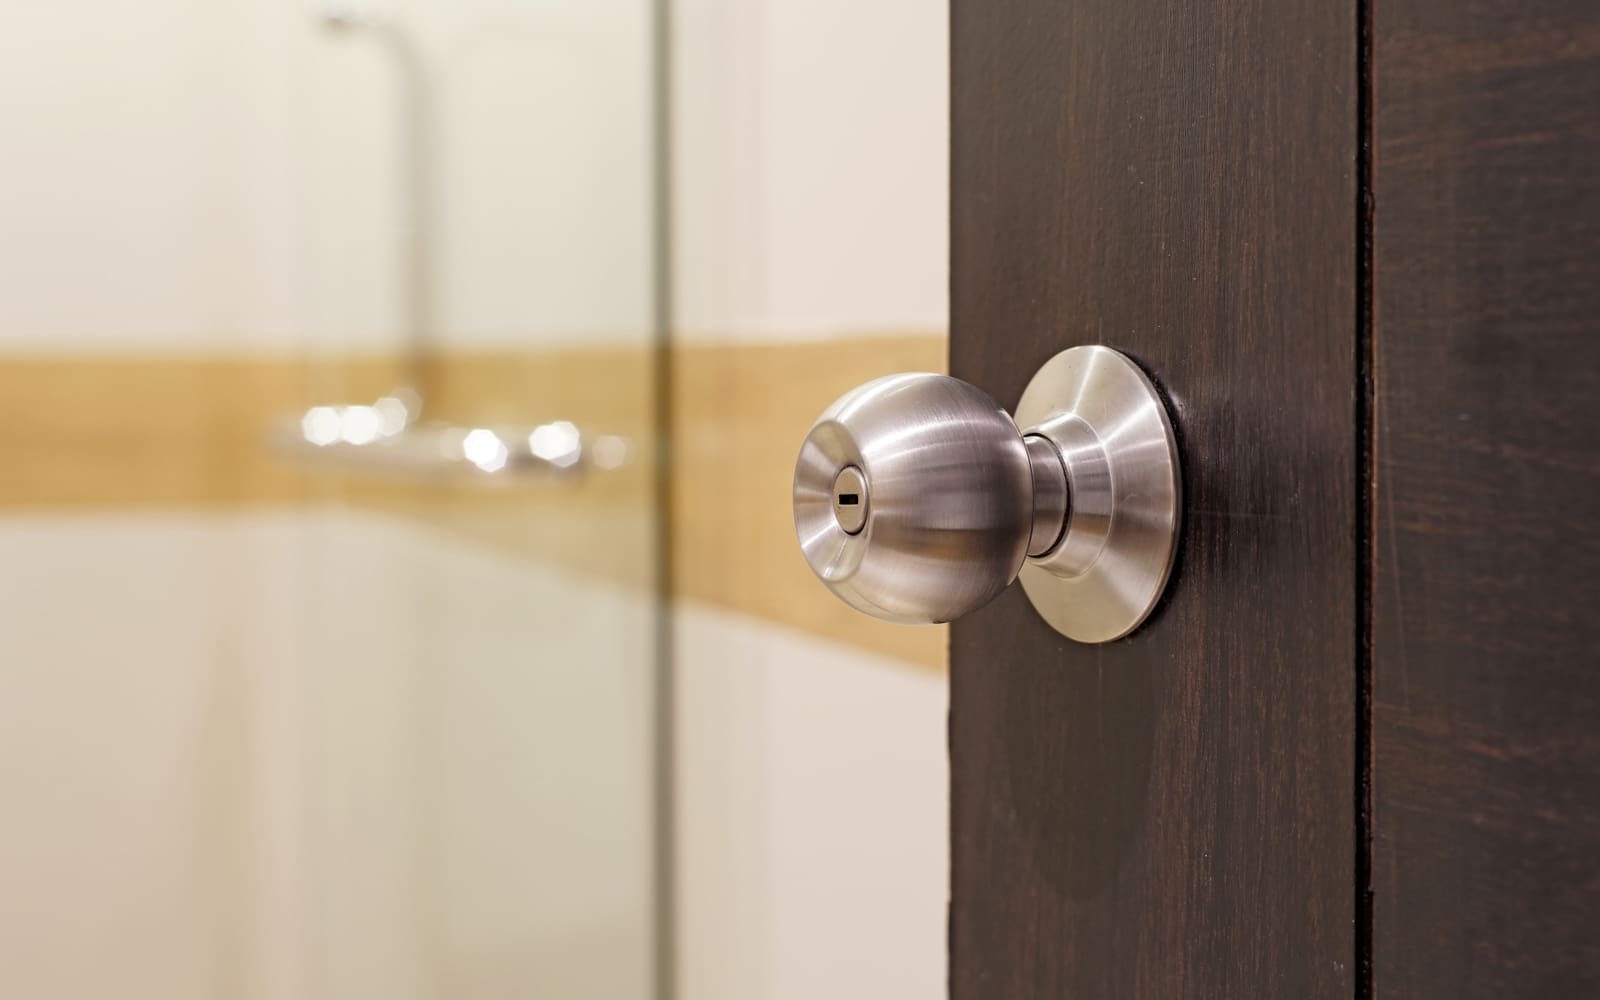 How to Unlock Bathroom Door With Hole